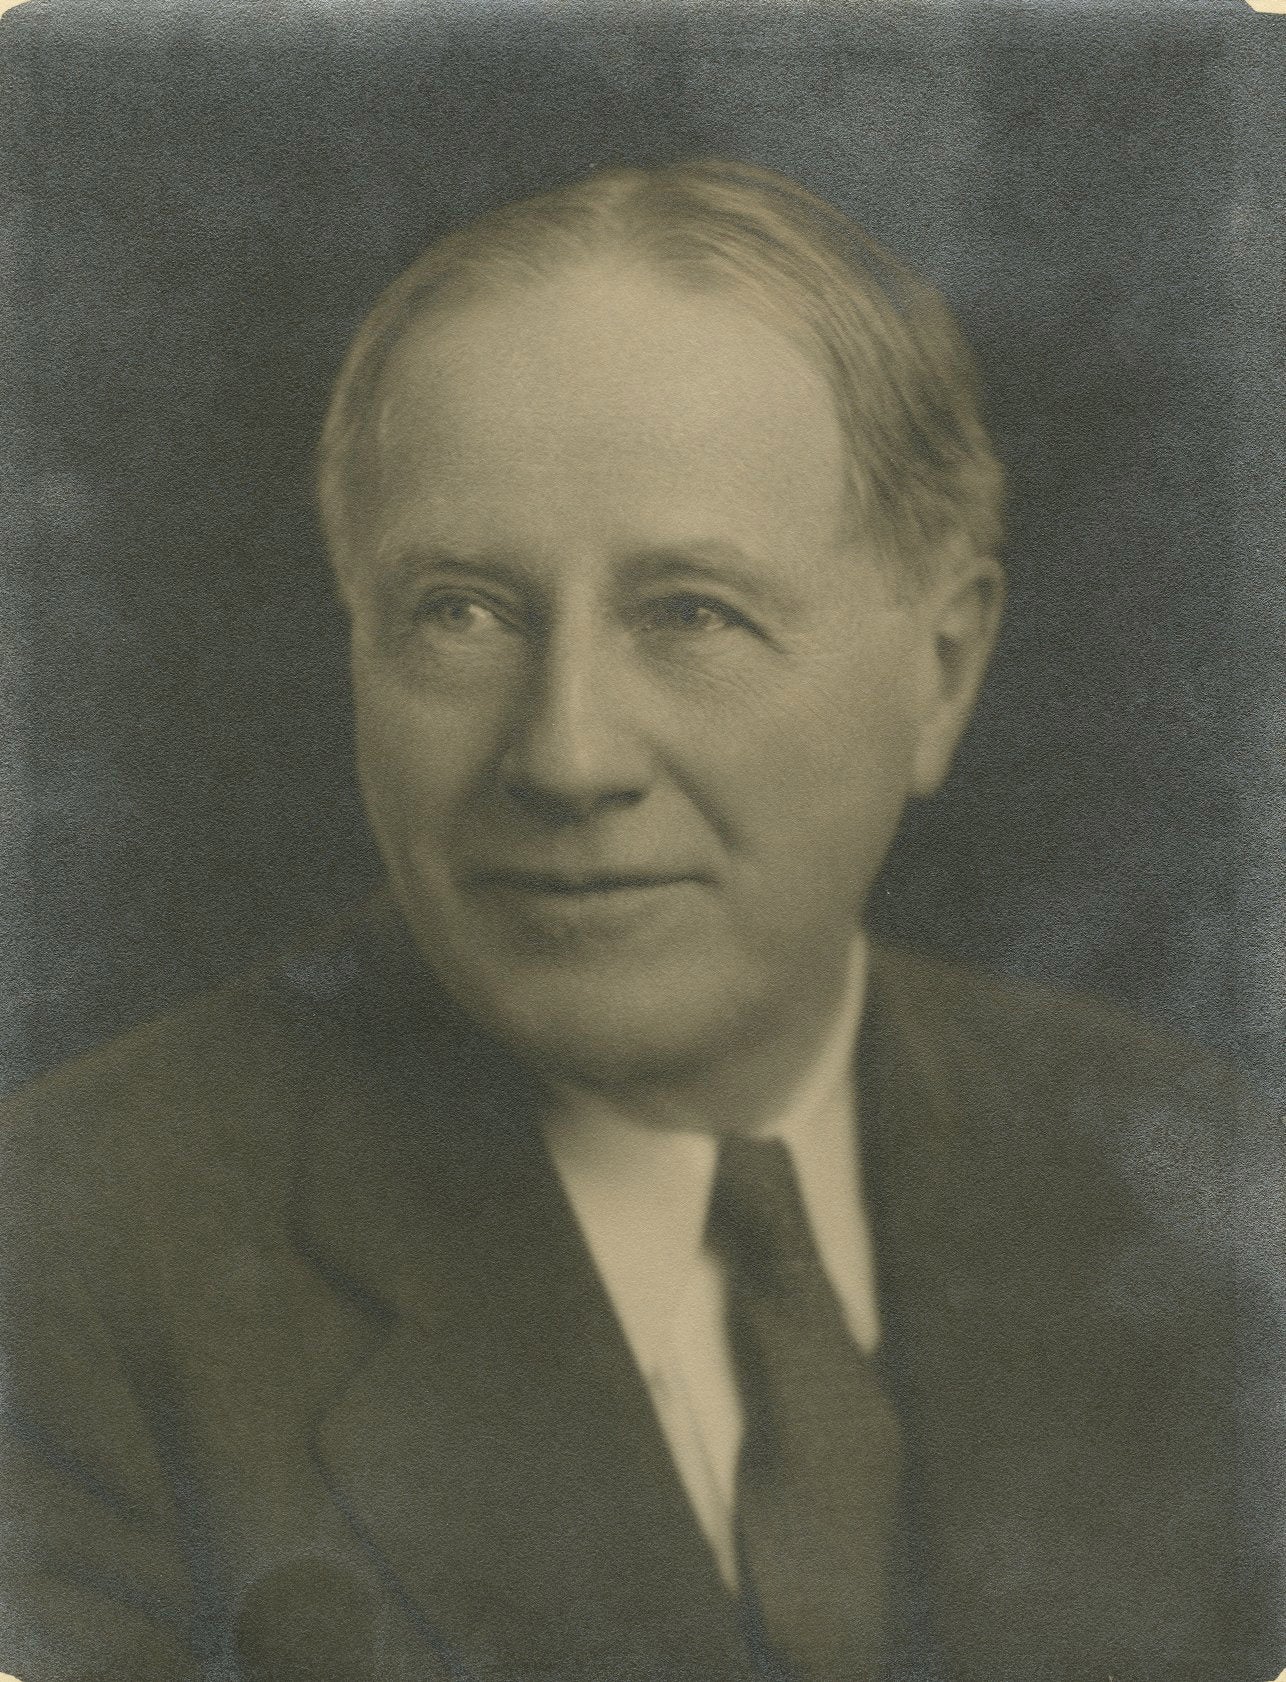 William Schleif, 1940